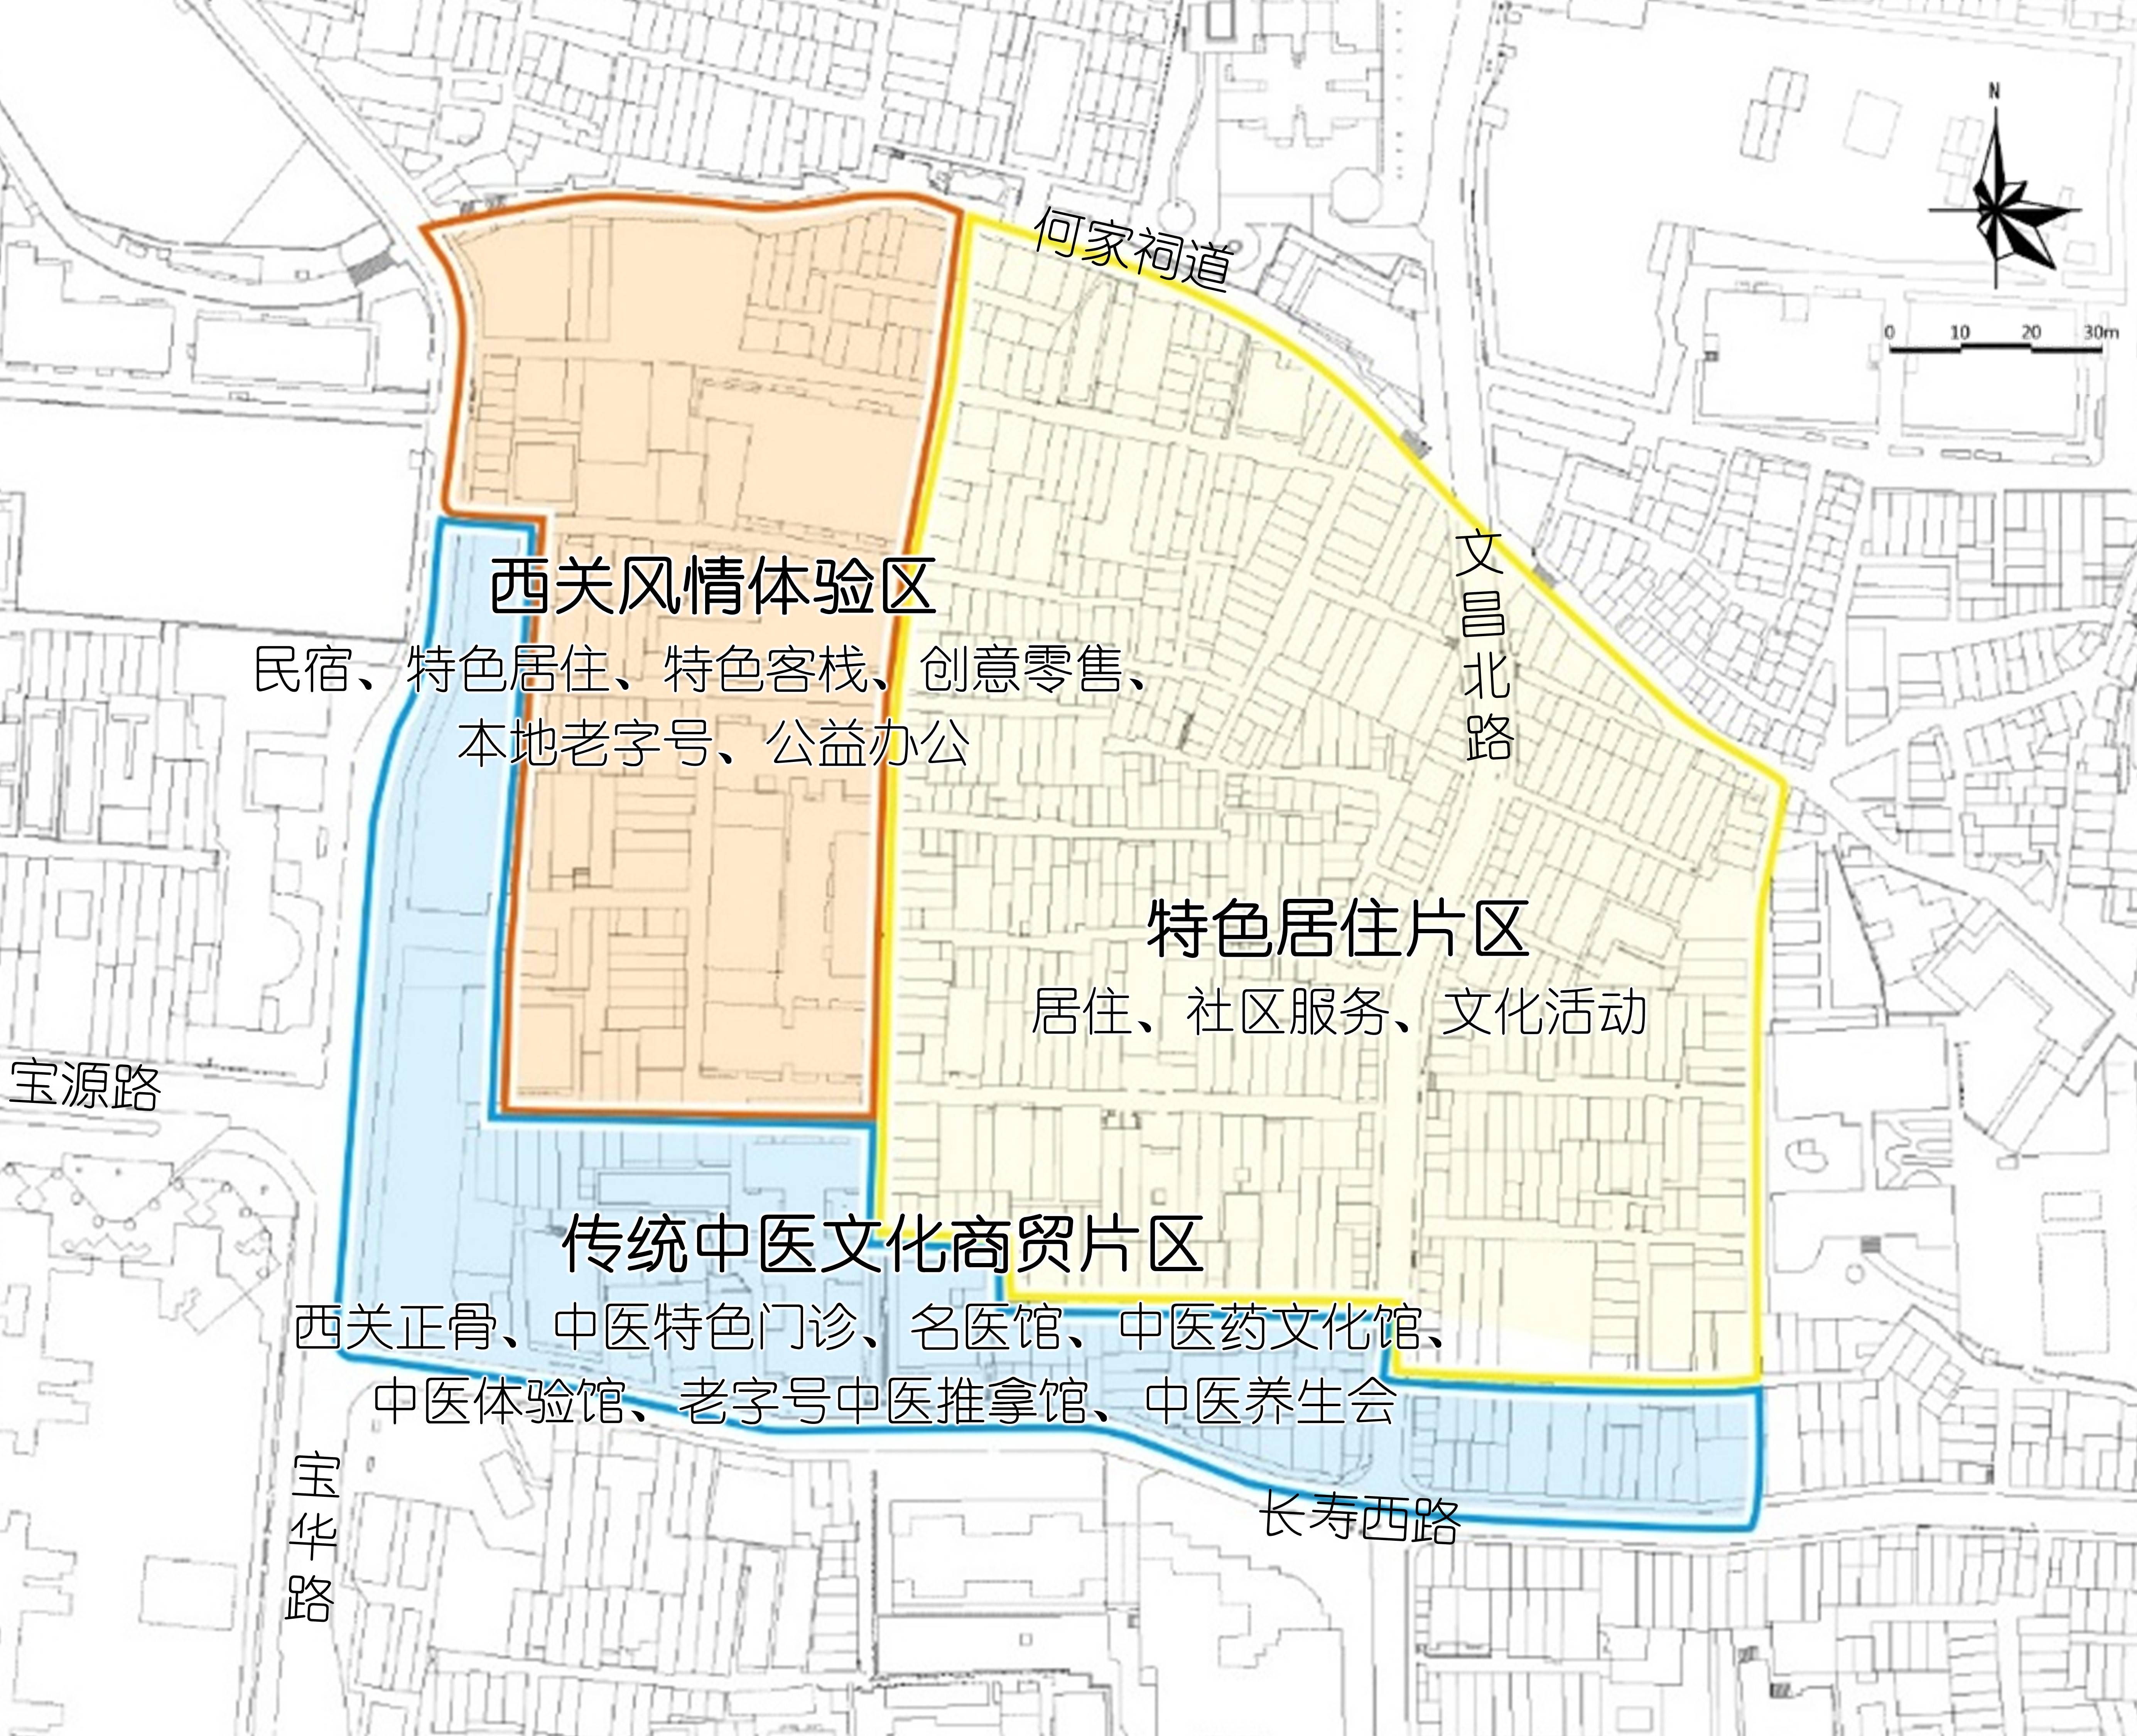 广州西关两大历史文化街区规划通过将在此建永庆坊三期